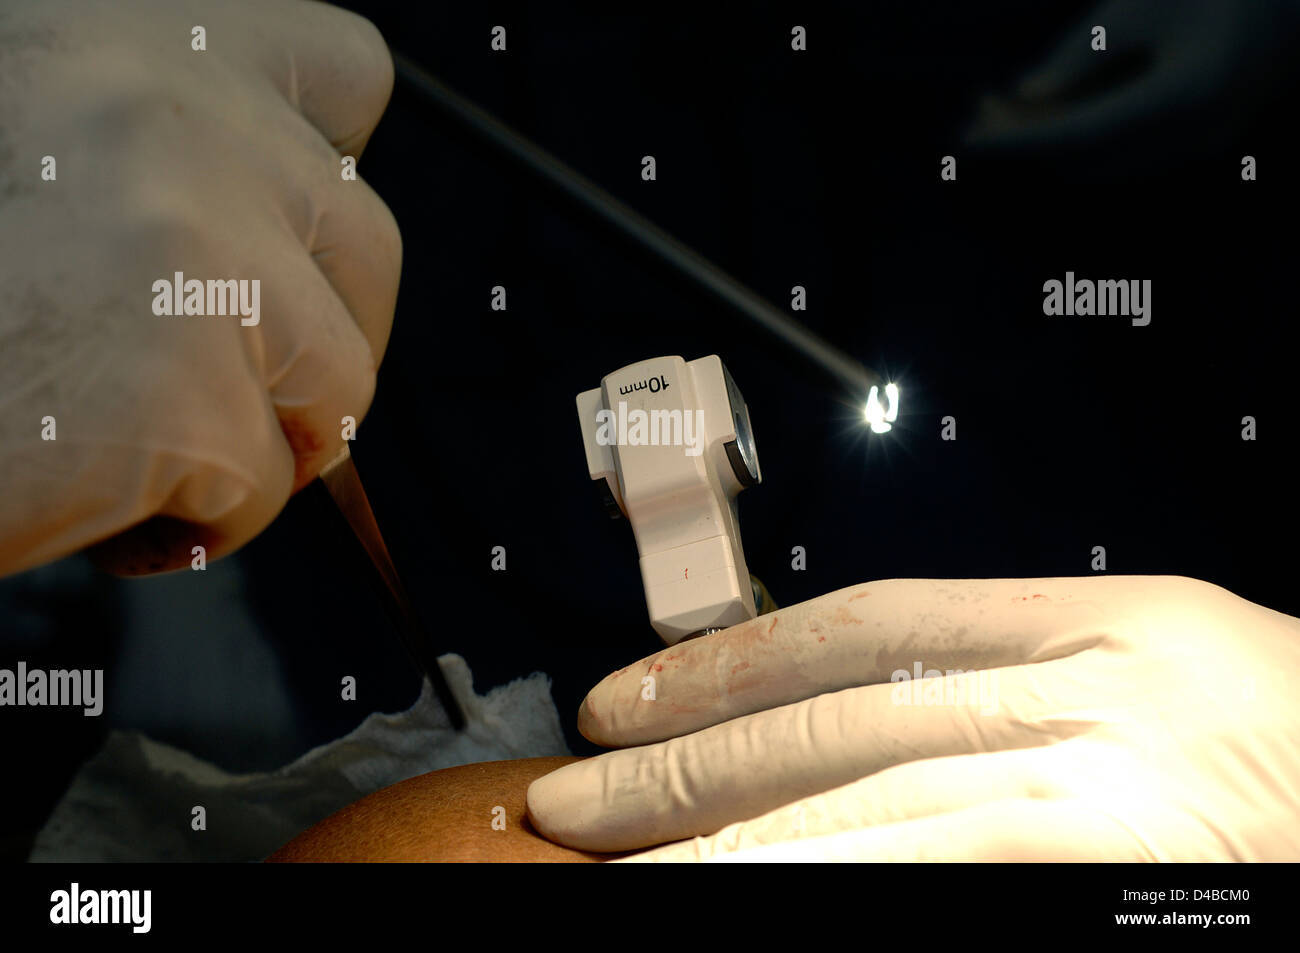 Il laparoscopio contiene fibre ottiche, una sorgente di luce e appositamente progettati strumenti chirurgici. Foto Stock